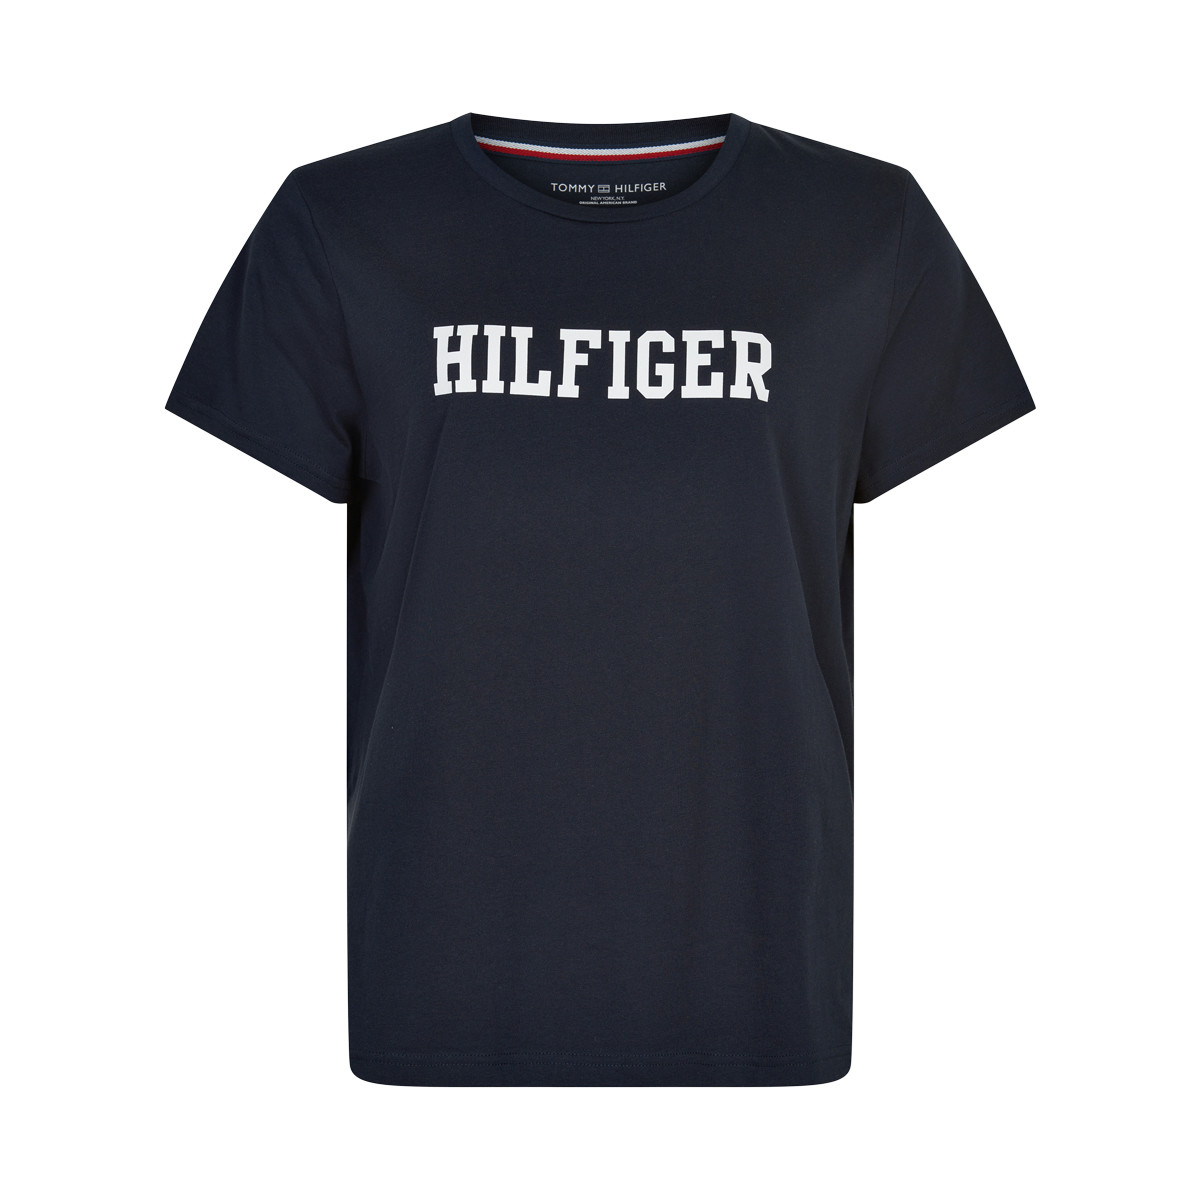 5: Tommy Hilfiger Cn T-shirt, Farve: Sort, Størrelse: S, Dame